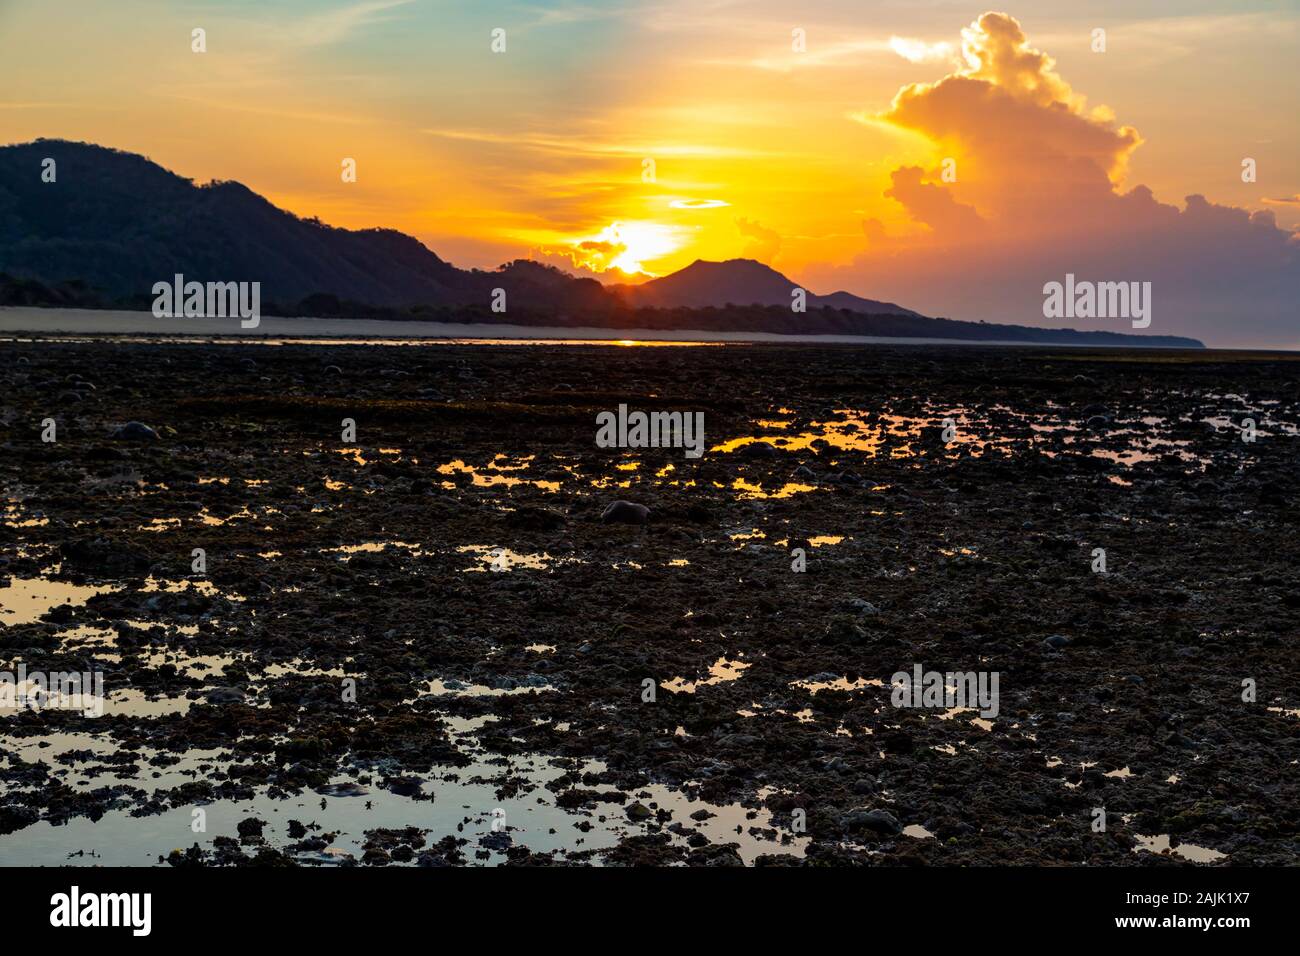 Sunrise landscape, Sumbawa island, Indonesia Stock Photo